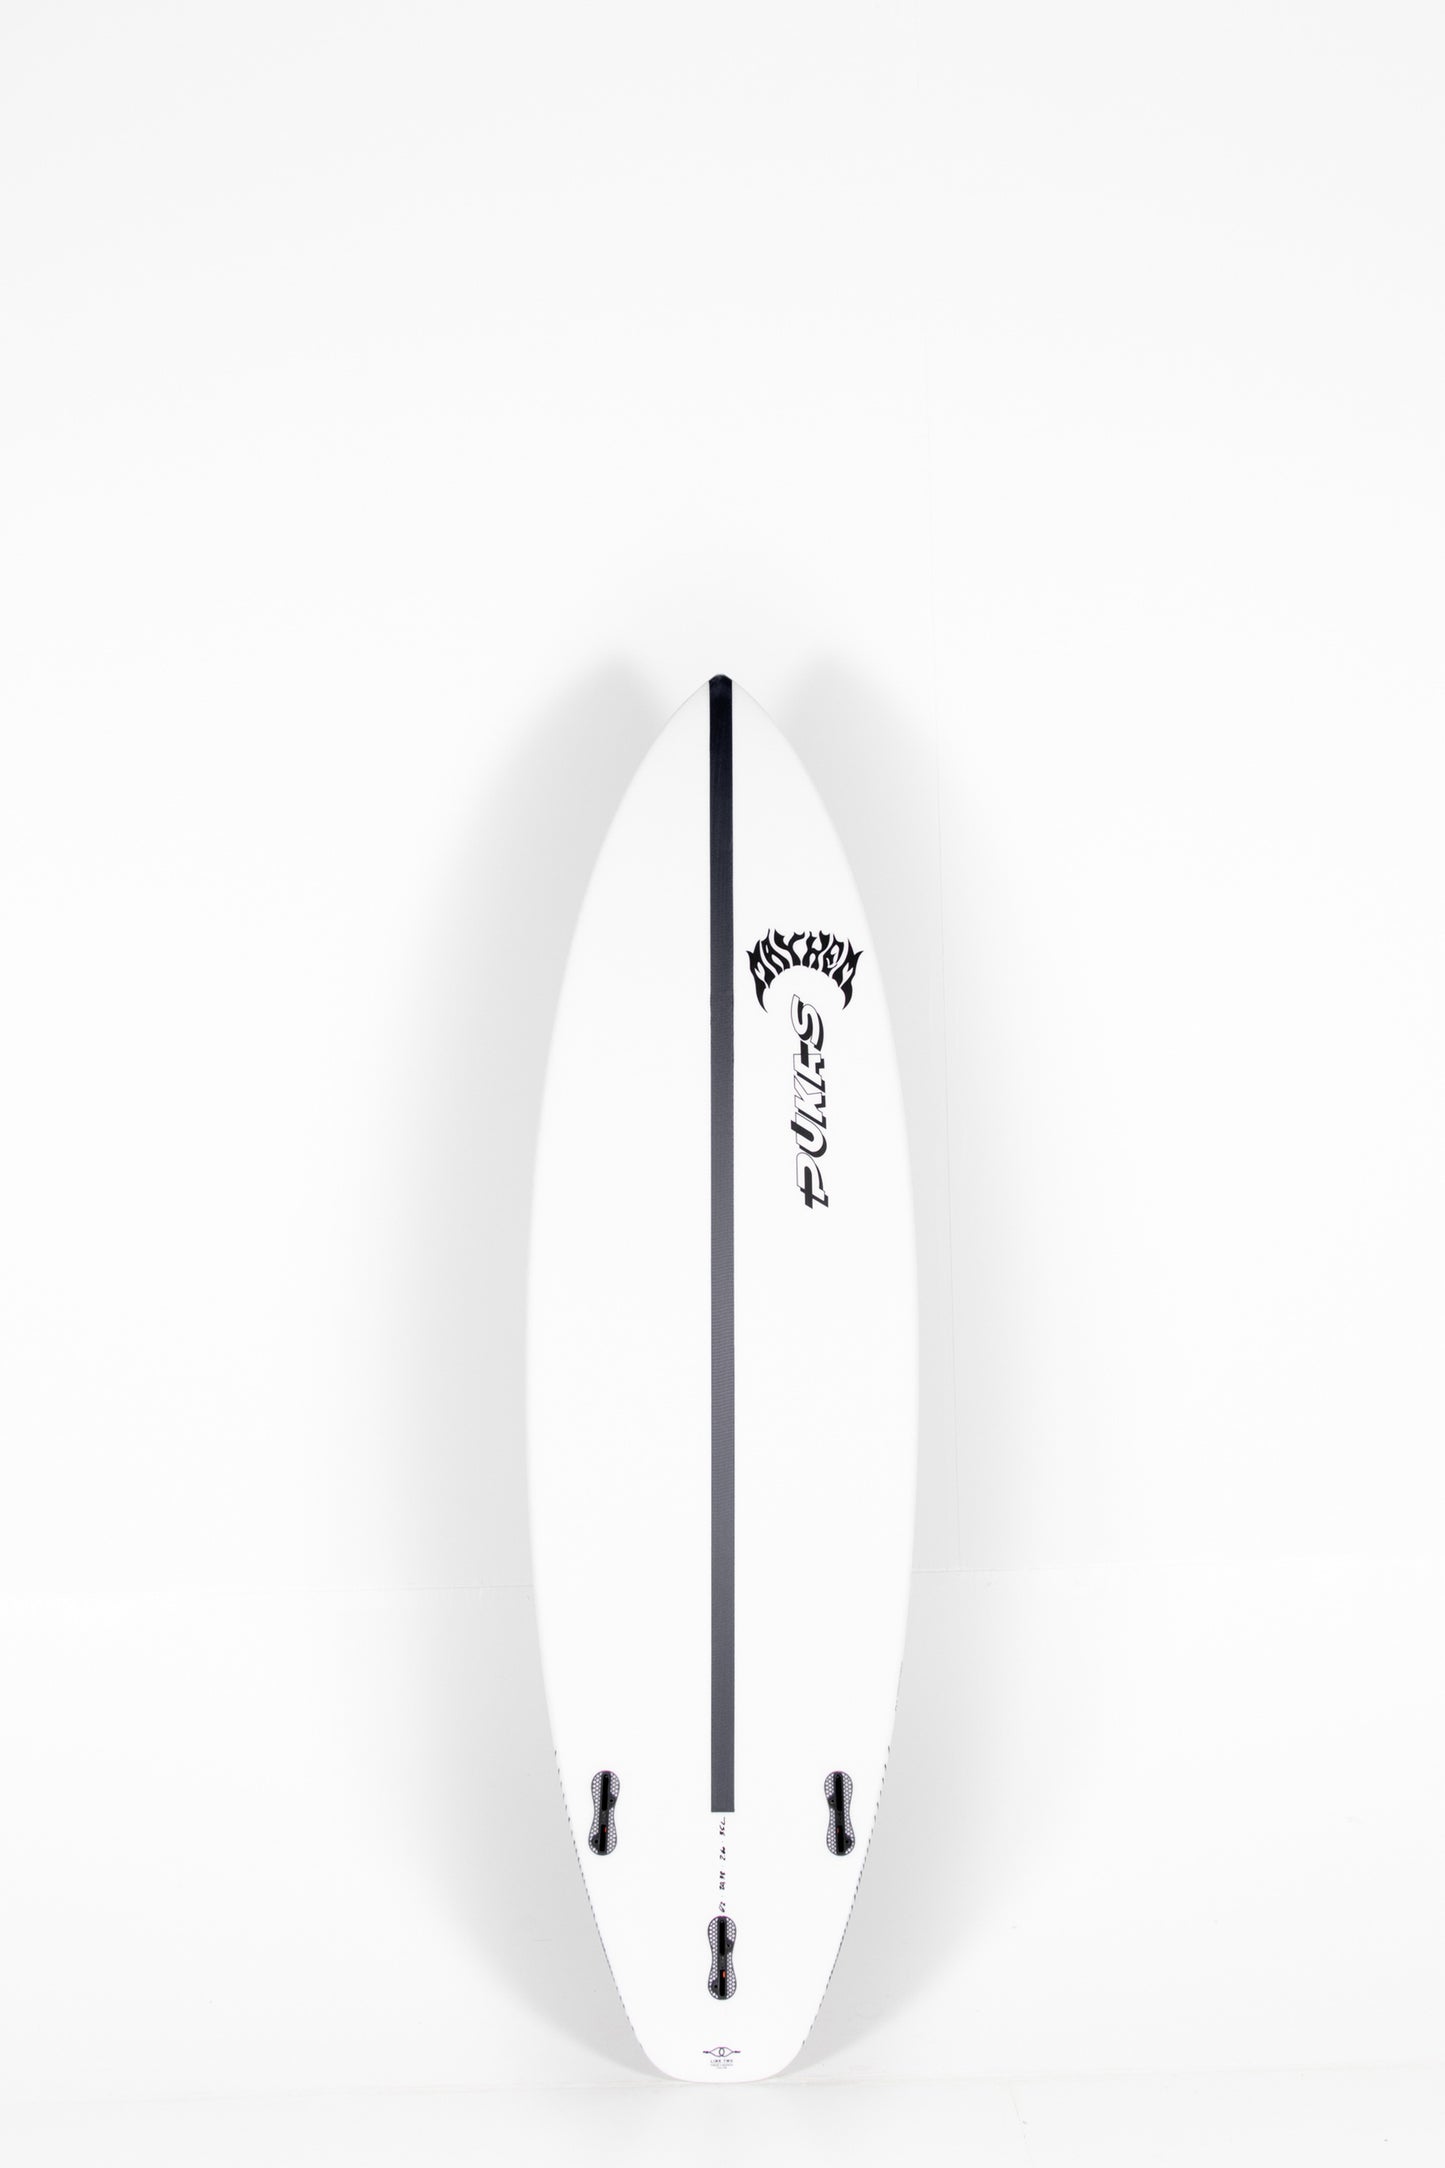 Pukas Surf Shop - Pukas Surfboard - INN·CA Tech - THE LINK 2  by Matt Biolos - 6'2” x 20,38" x 2.6 x 35L